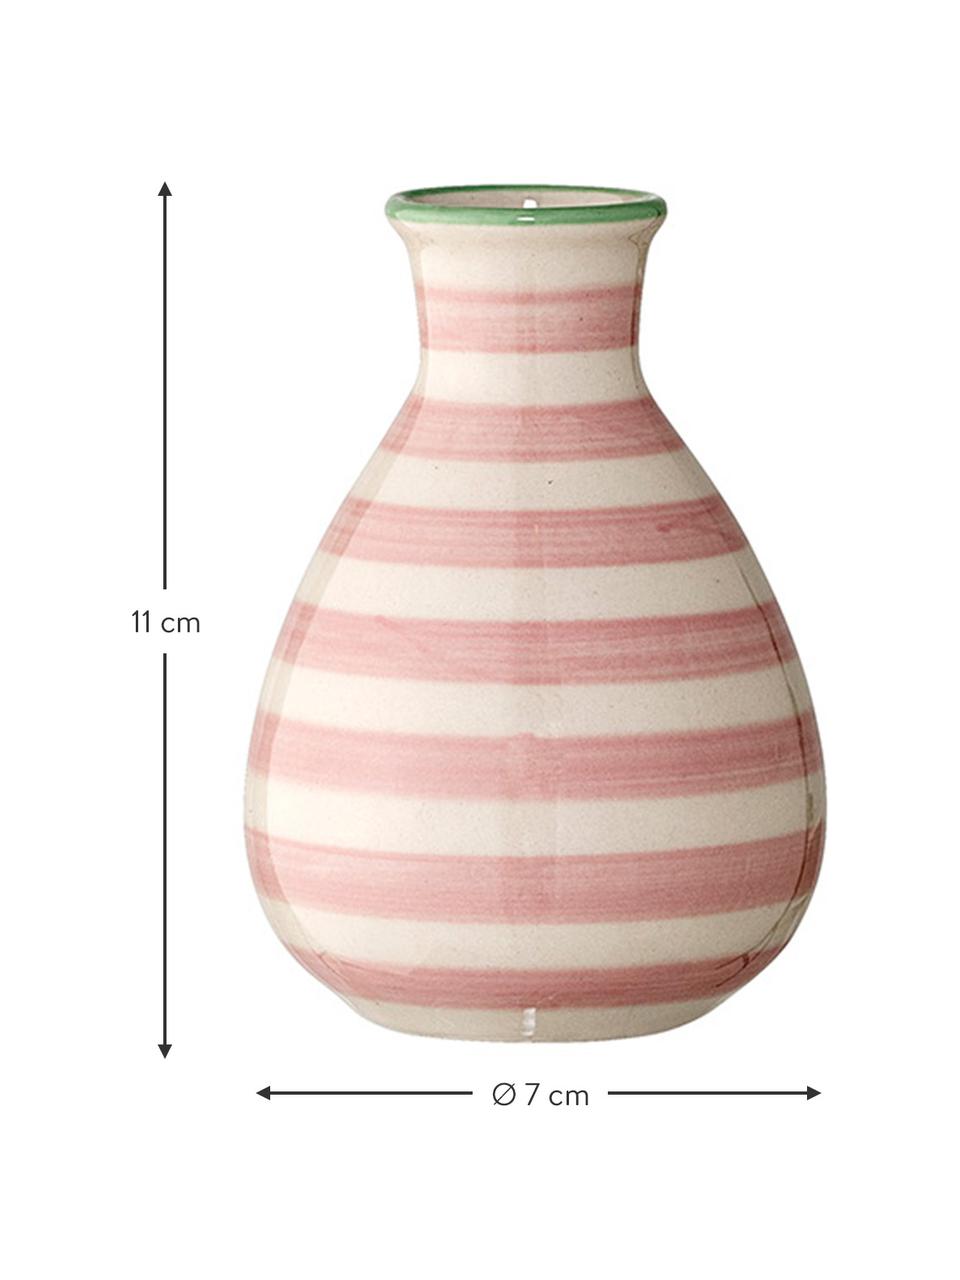 Kleines Vasen-Set Patrizia mit verspieltem Muster, 5-tlg., Steingut, Bunt, Ø 7 x H 11 cm